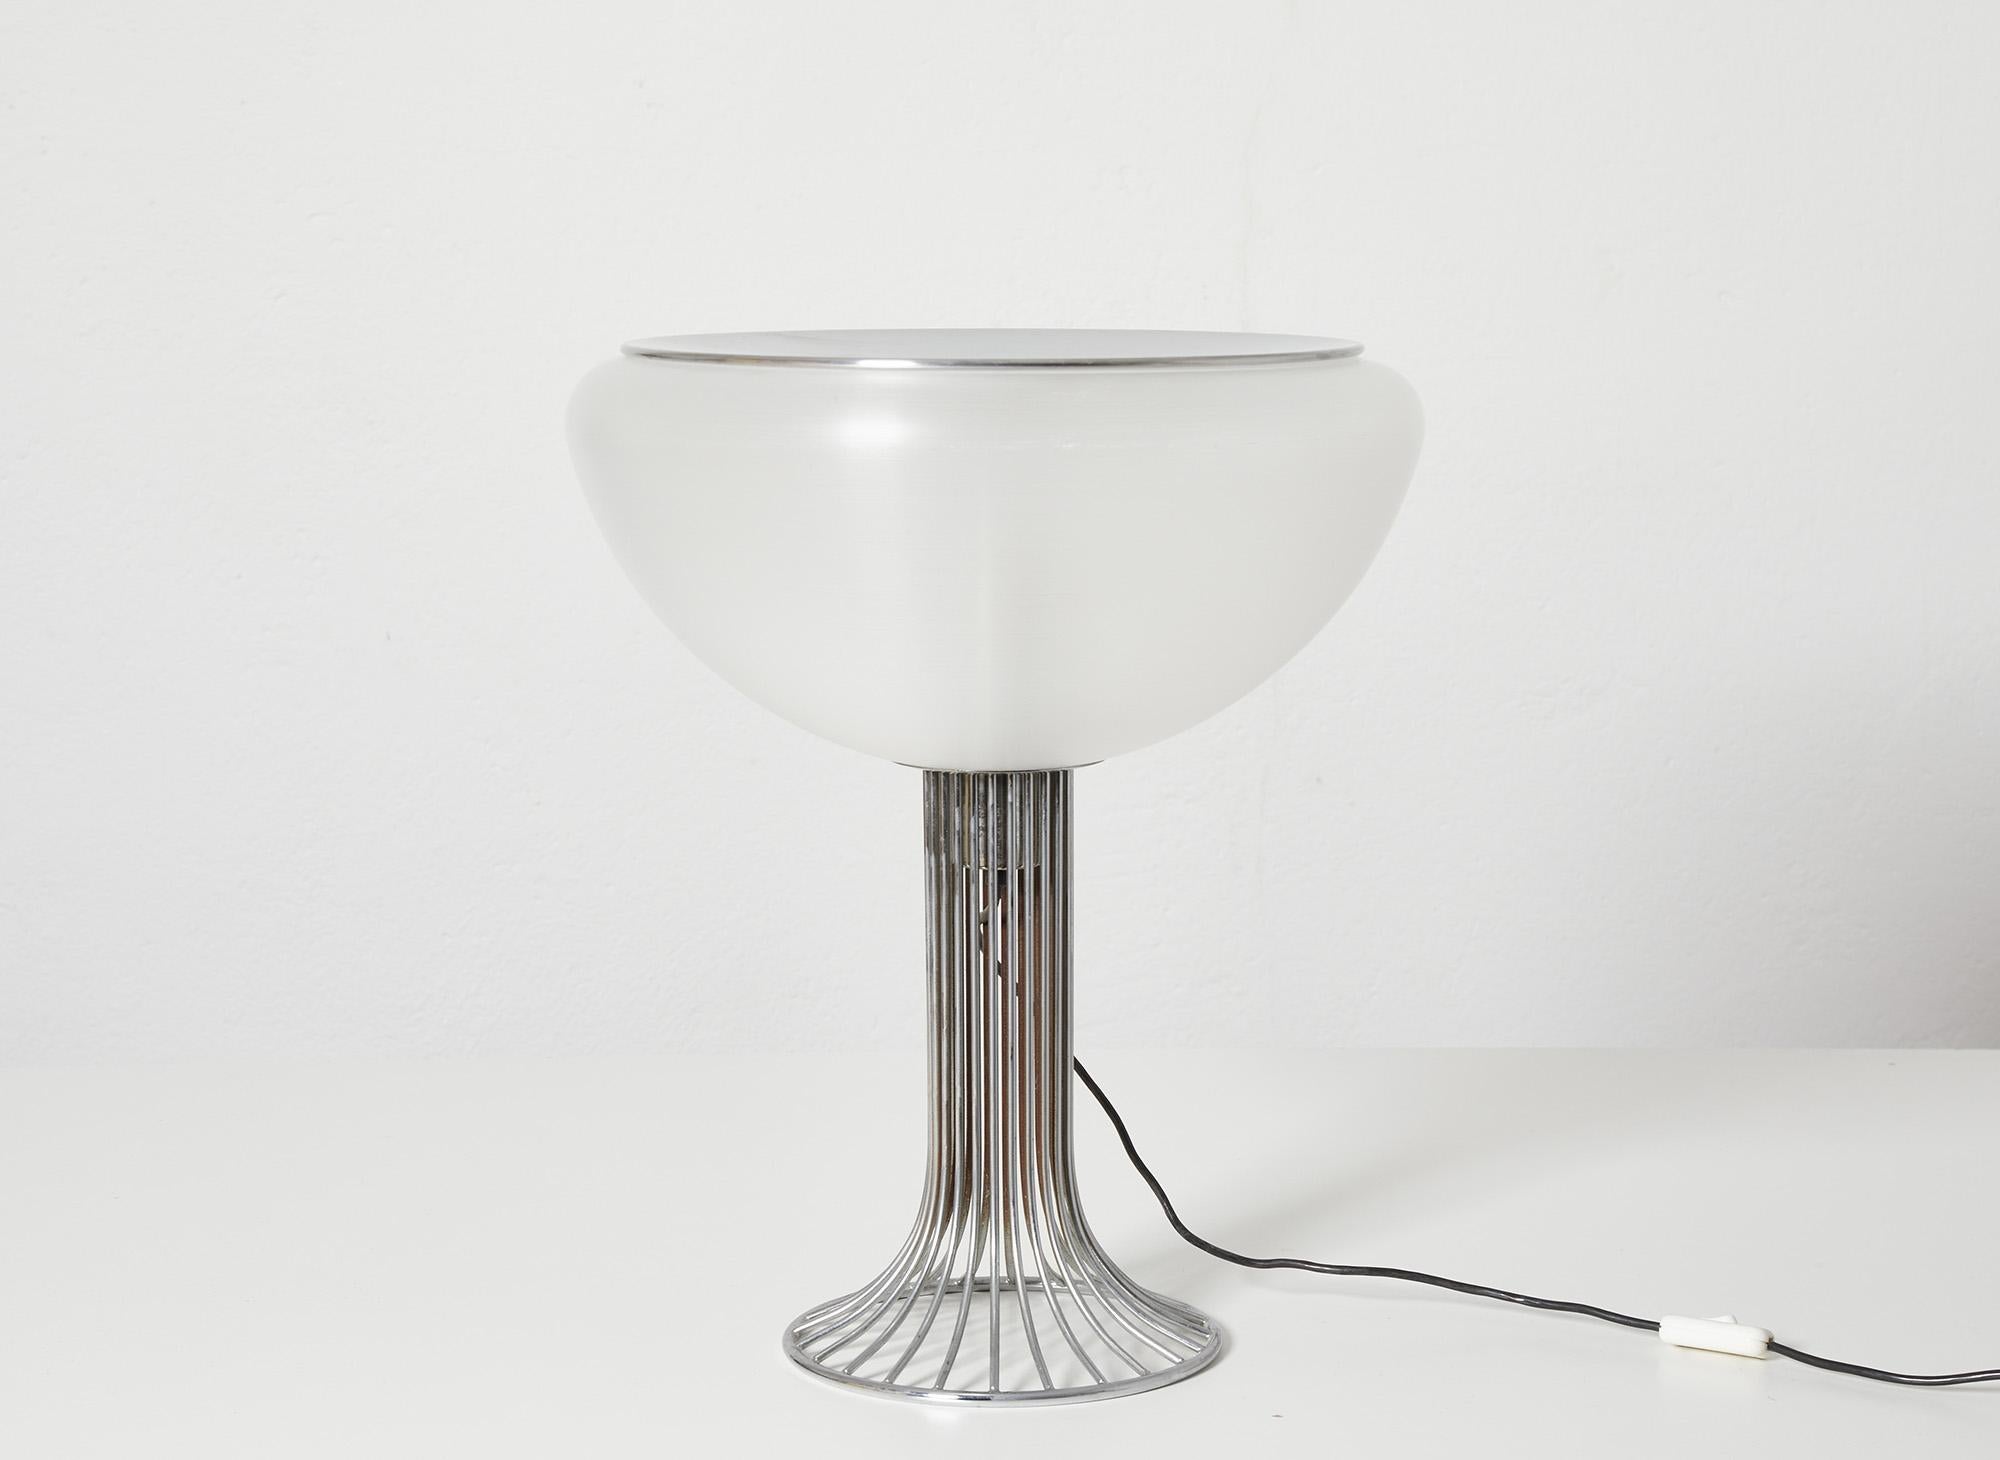 Lampe de table Moana conçue par Luigi Massoni vers 1968

Produit par D&H (Design/One) Guzzini, Italie 1968

Base et structure en forme de tulipe en fil métallique chromé avec abat-jour en métacrylate et diffuseur en métal chromé.

La structure